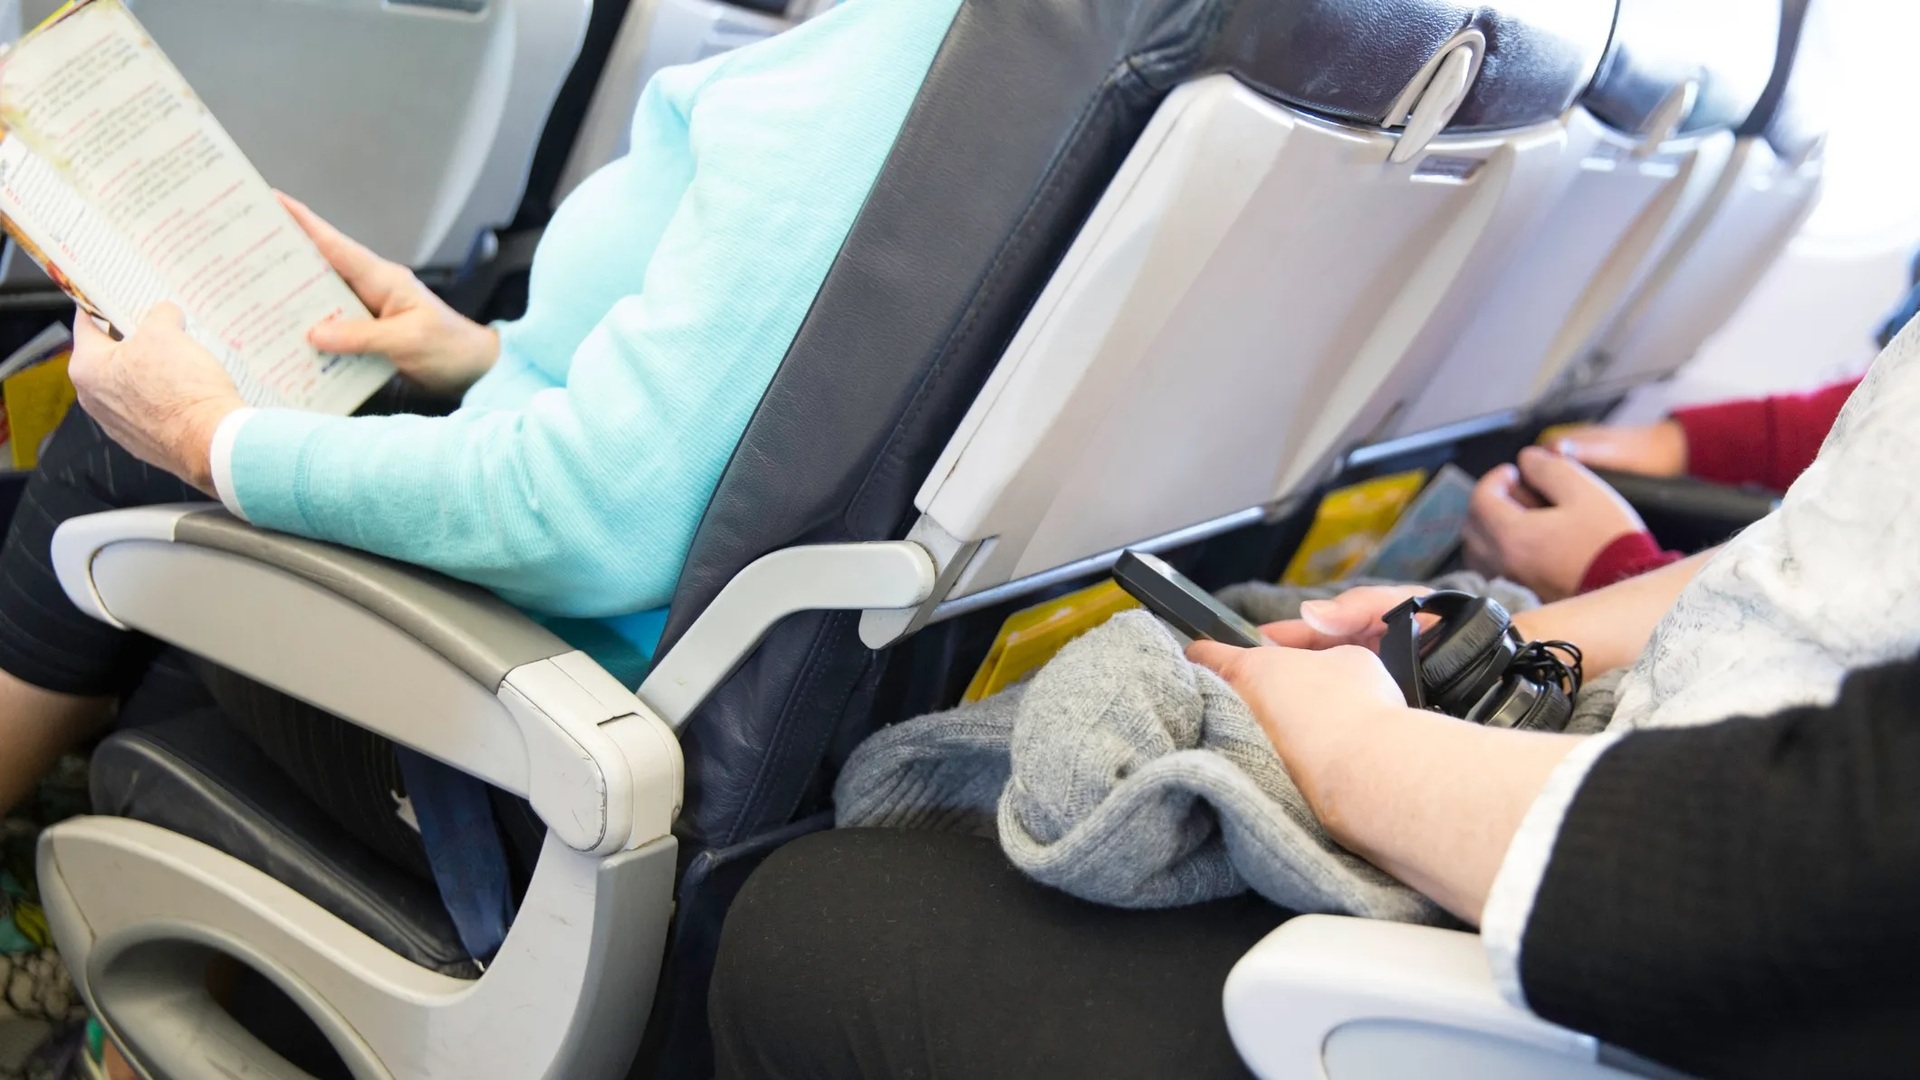 Tính năng ngả ghế trên máy bay là chủ đề gây tranh cãi nhiều năm giữa các nhóm hành khách đi máy bay. Ảnh minh họa: USA Today